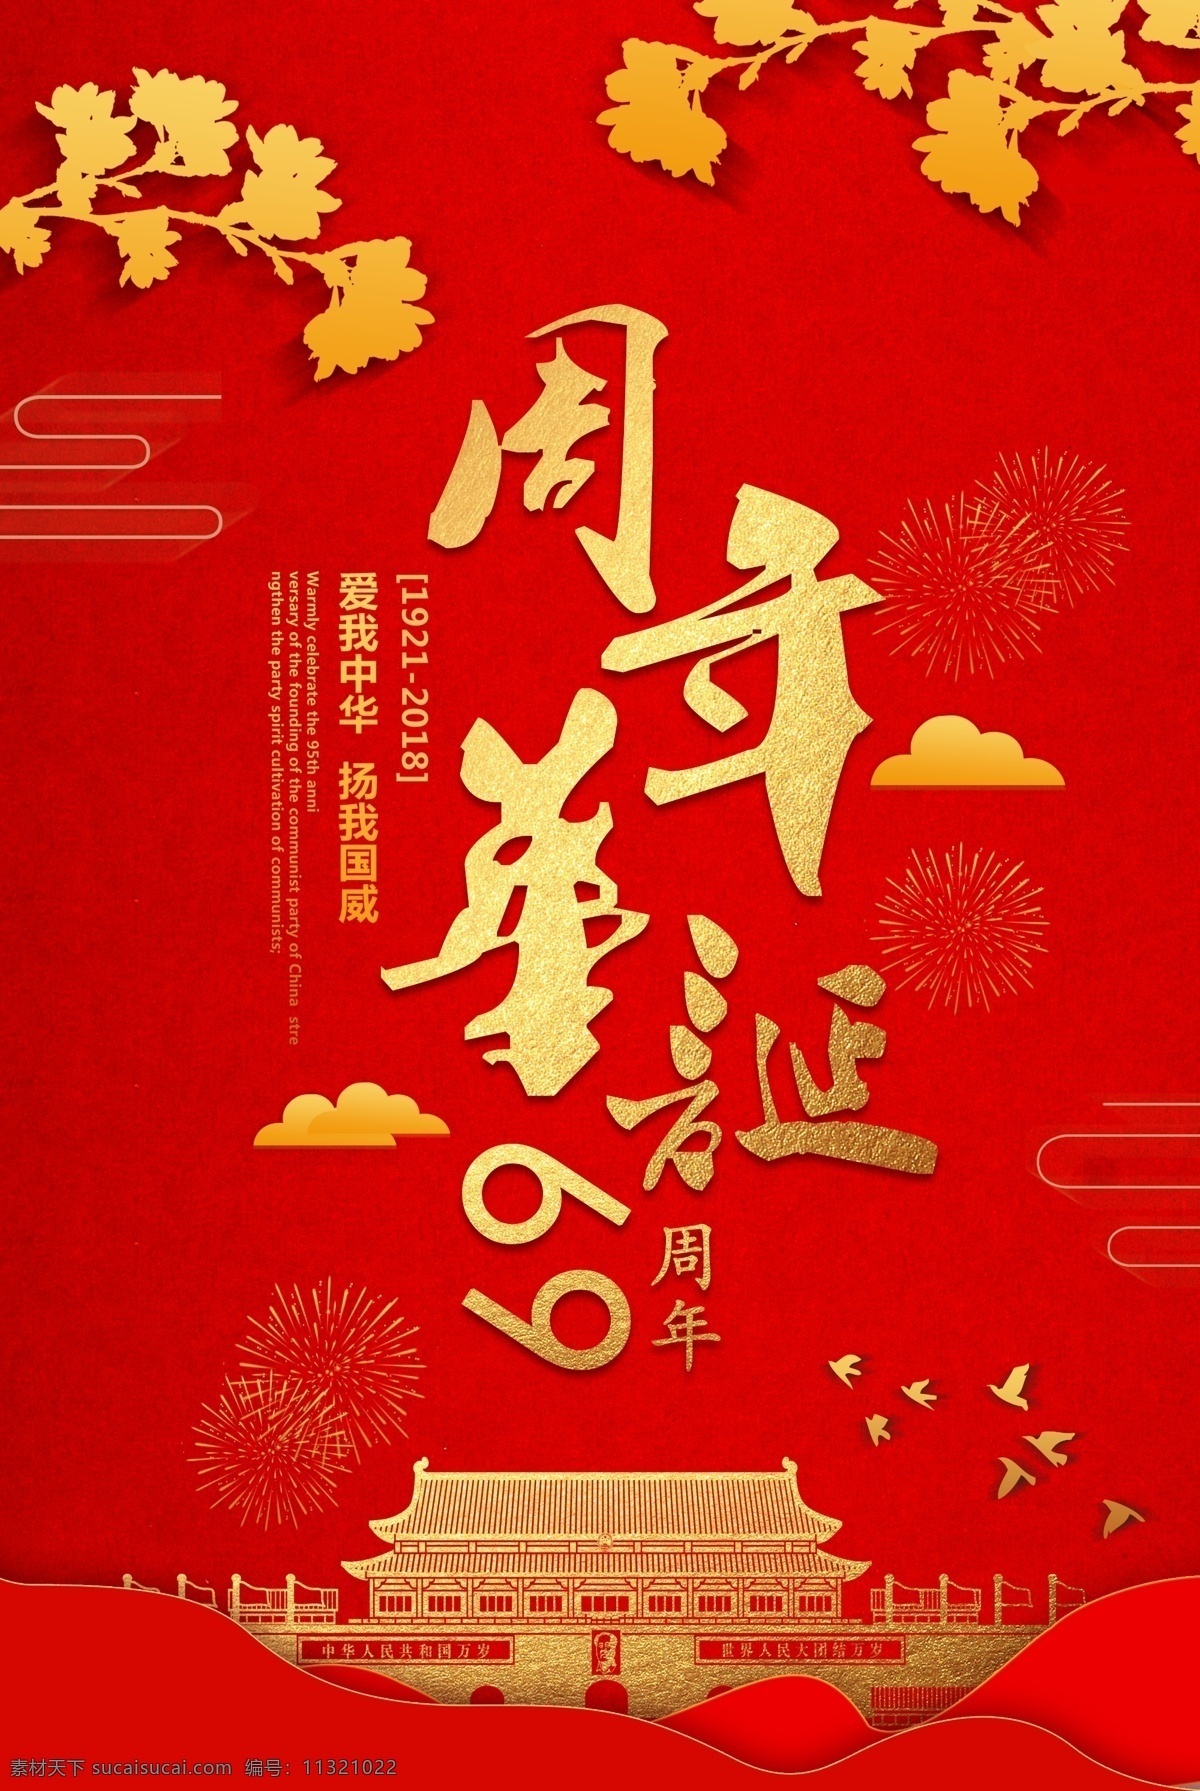 十月 号 国庆节 周年 海报 欢度国庆海报 十月一 周年庆典 模版